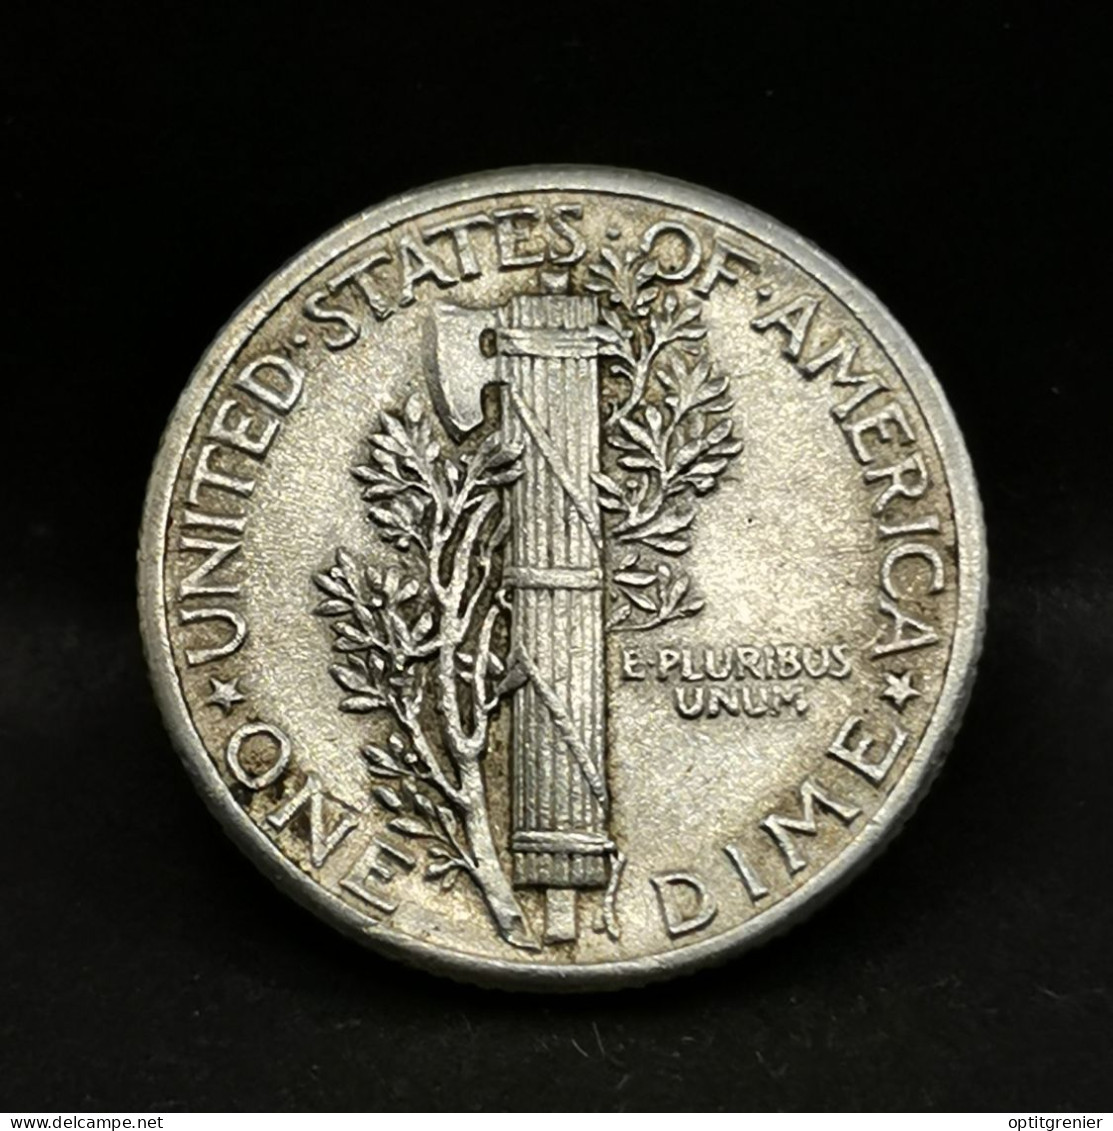 1 MERCURY DIME 10 CENTS ARGENT 1940 PHILADELPHIE USA / SILVER - 1916-1945: Mercury (Mercurio)